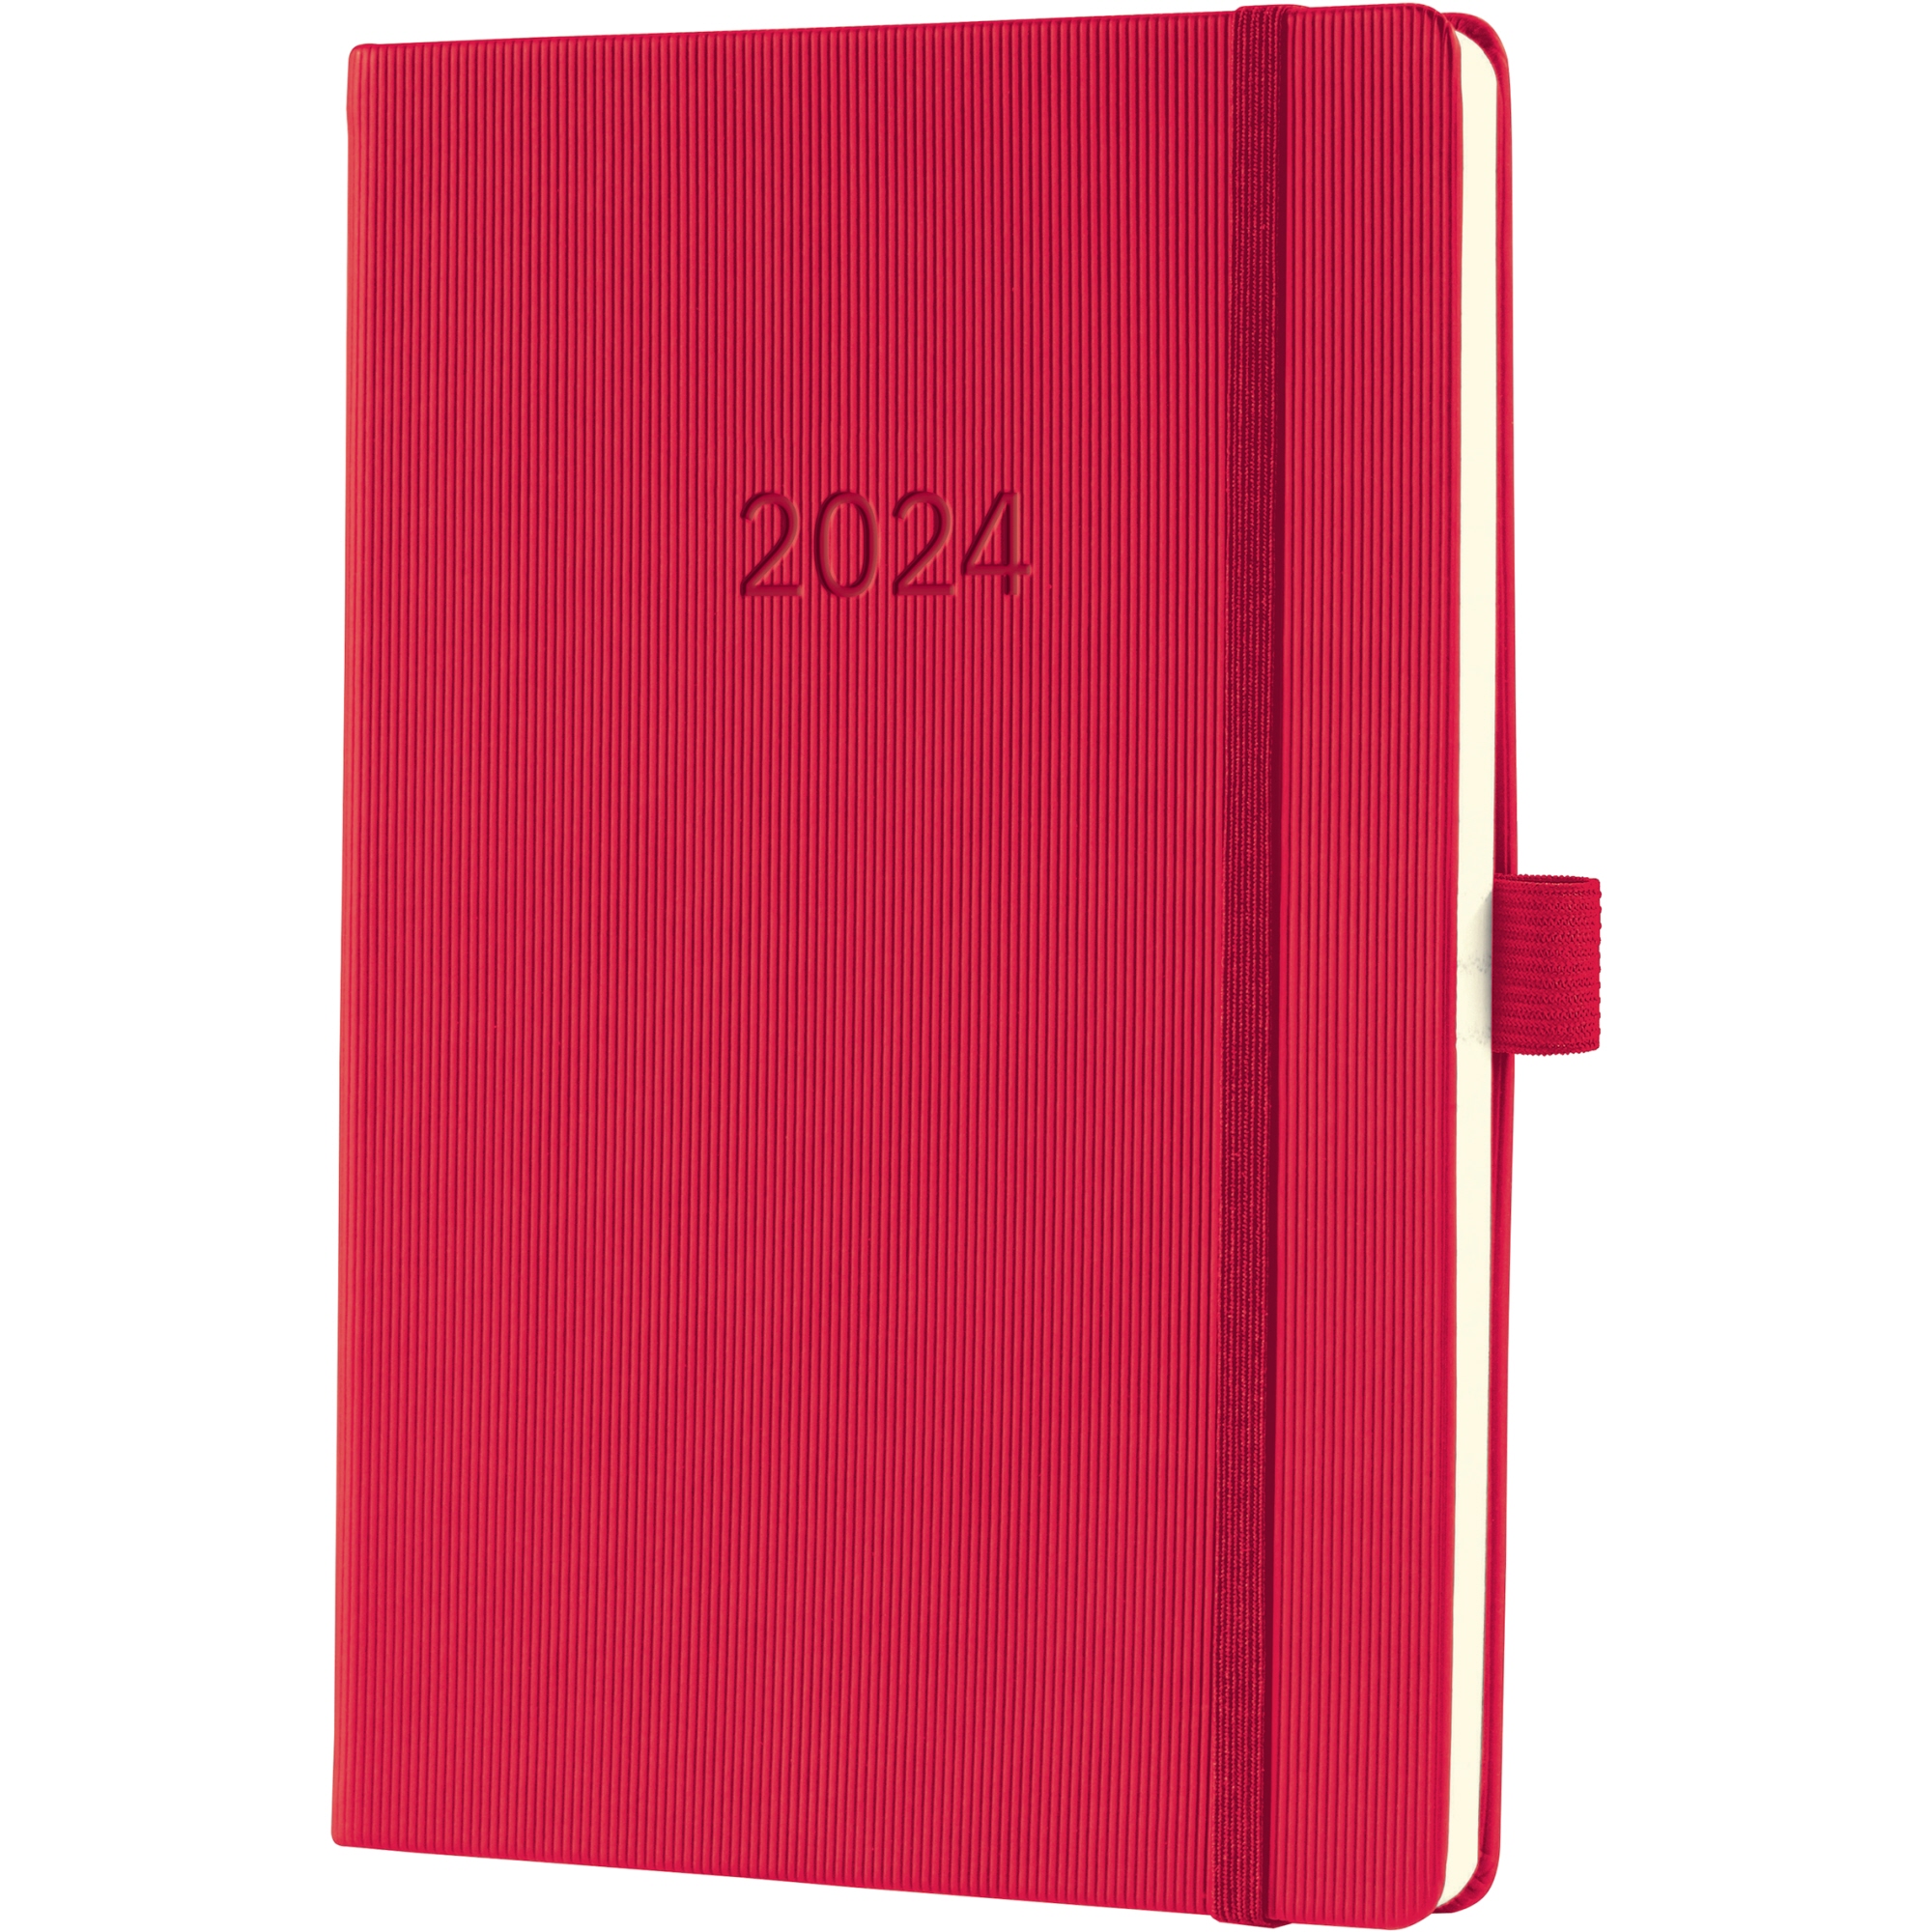 SIGEL Buchkalender CONCEPTUM® DIN A5 2024 Hardcover Softwave rot